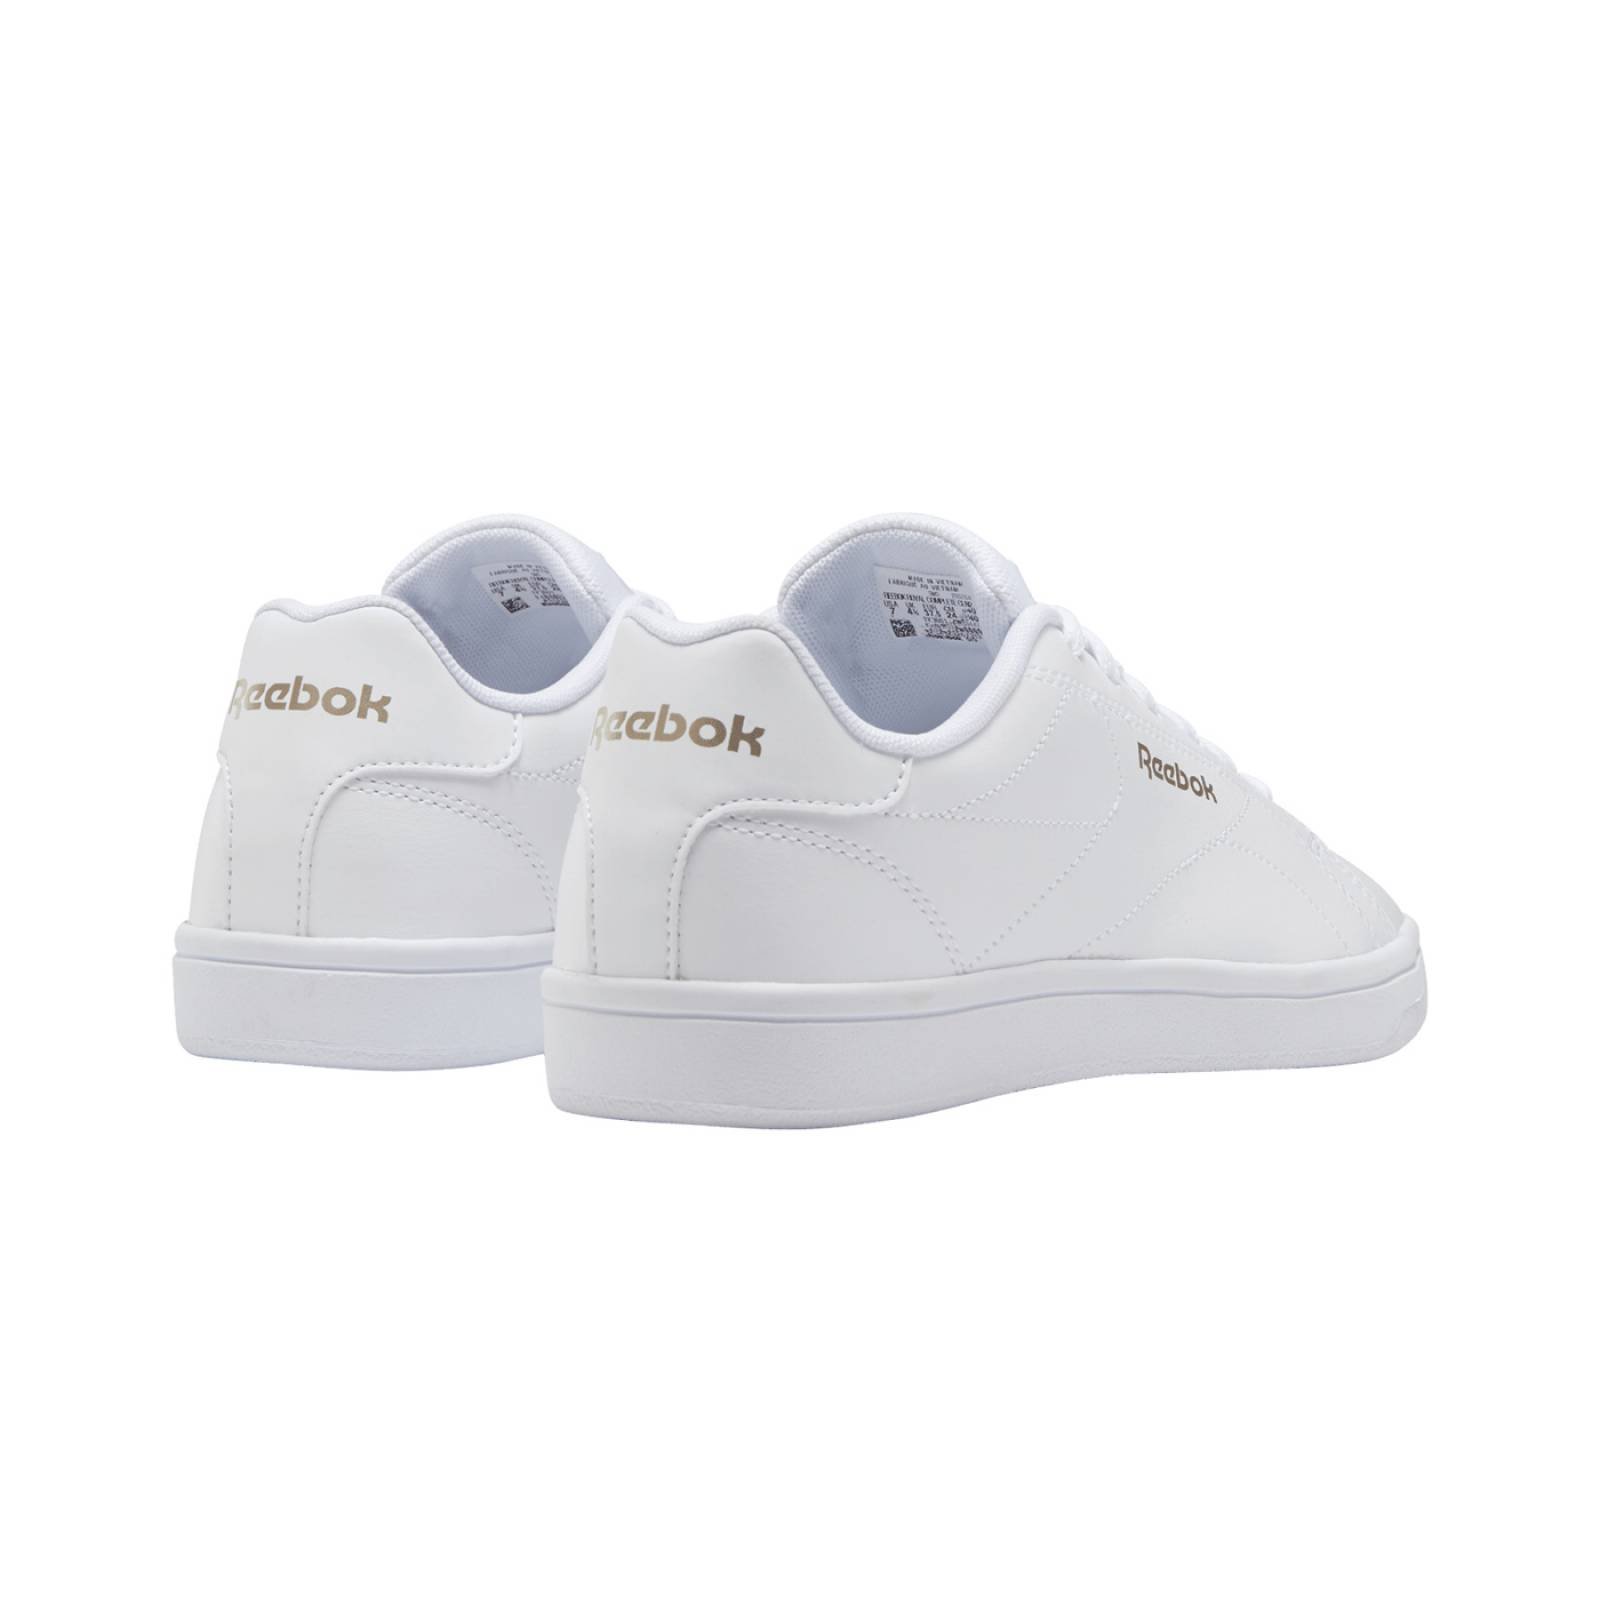 Zapatillas sneaker de mujer REEBOK gw9411 color blanco